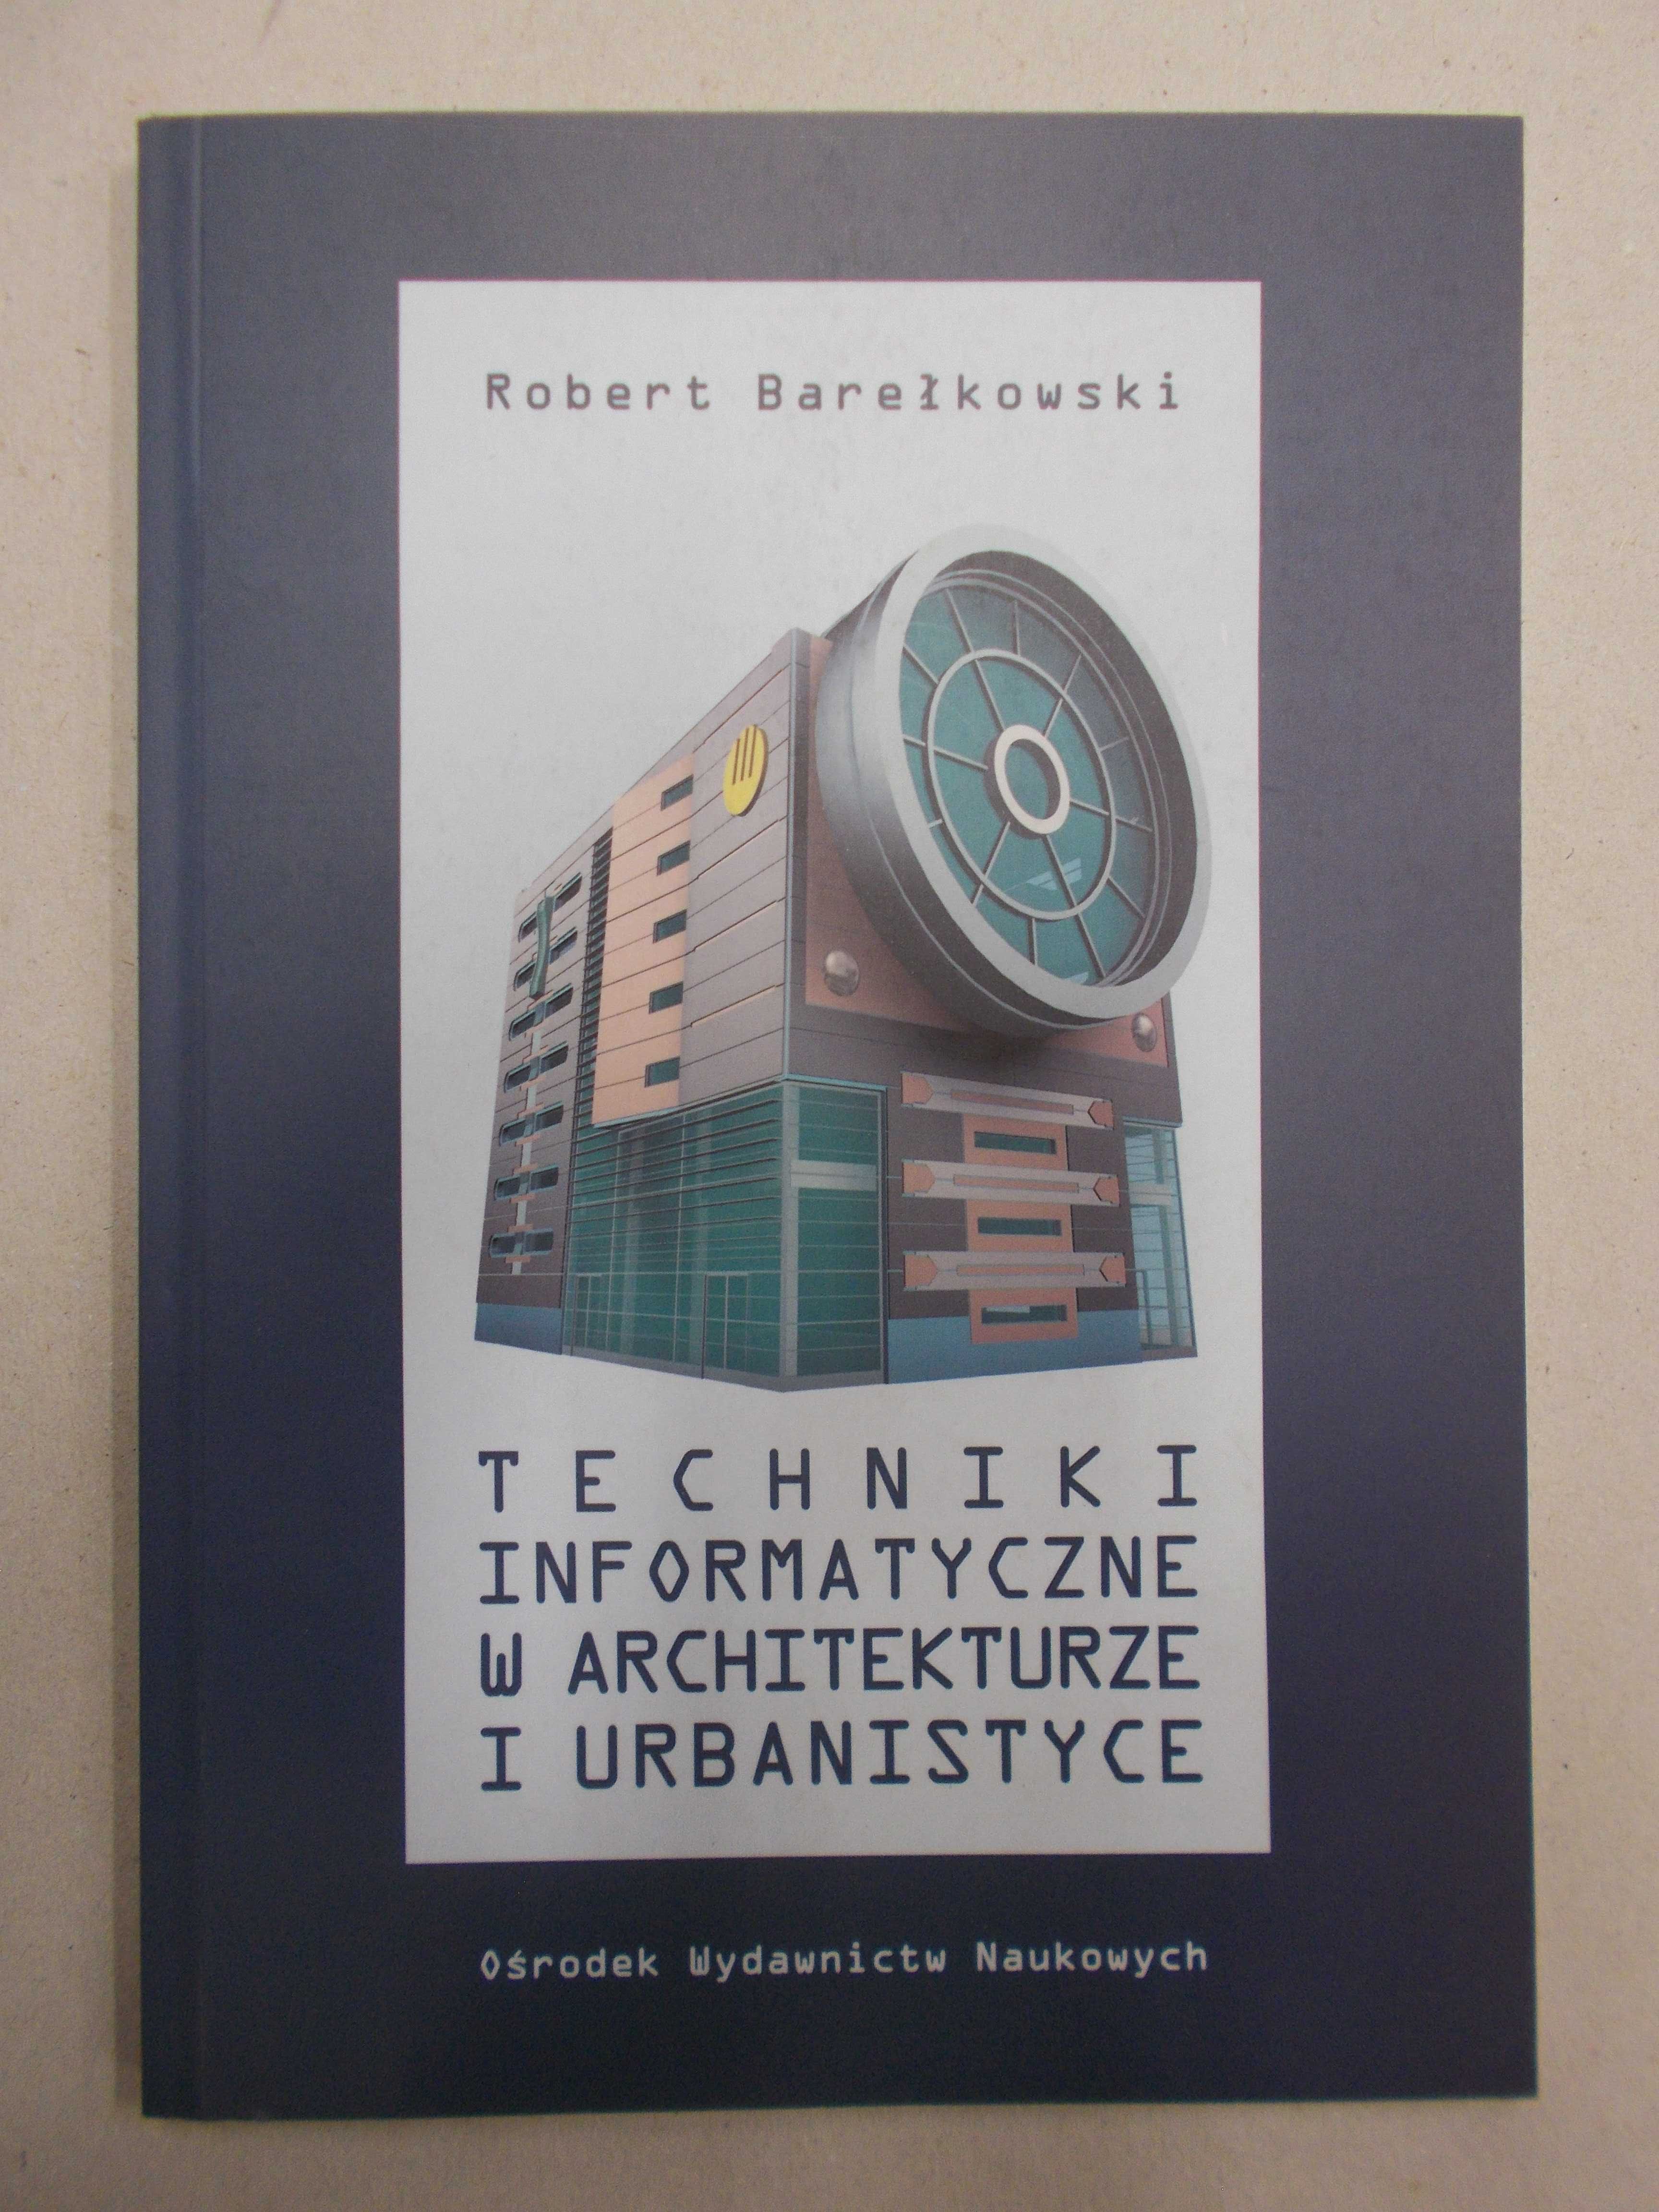 Robert Barełkowski: Techniki informatyczne w architekturze urbanistyce